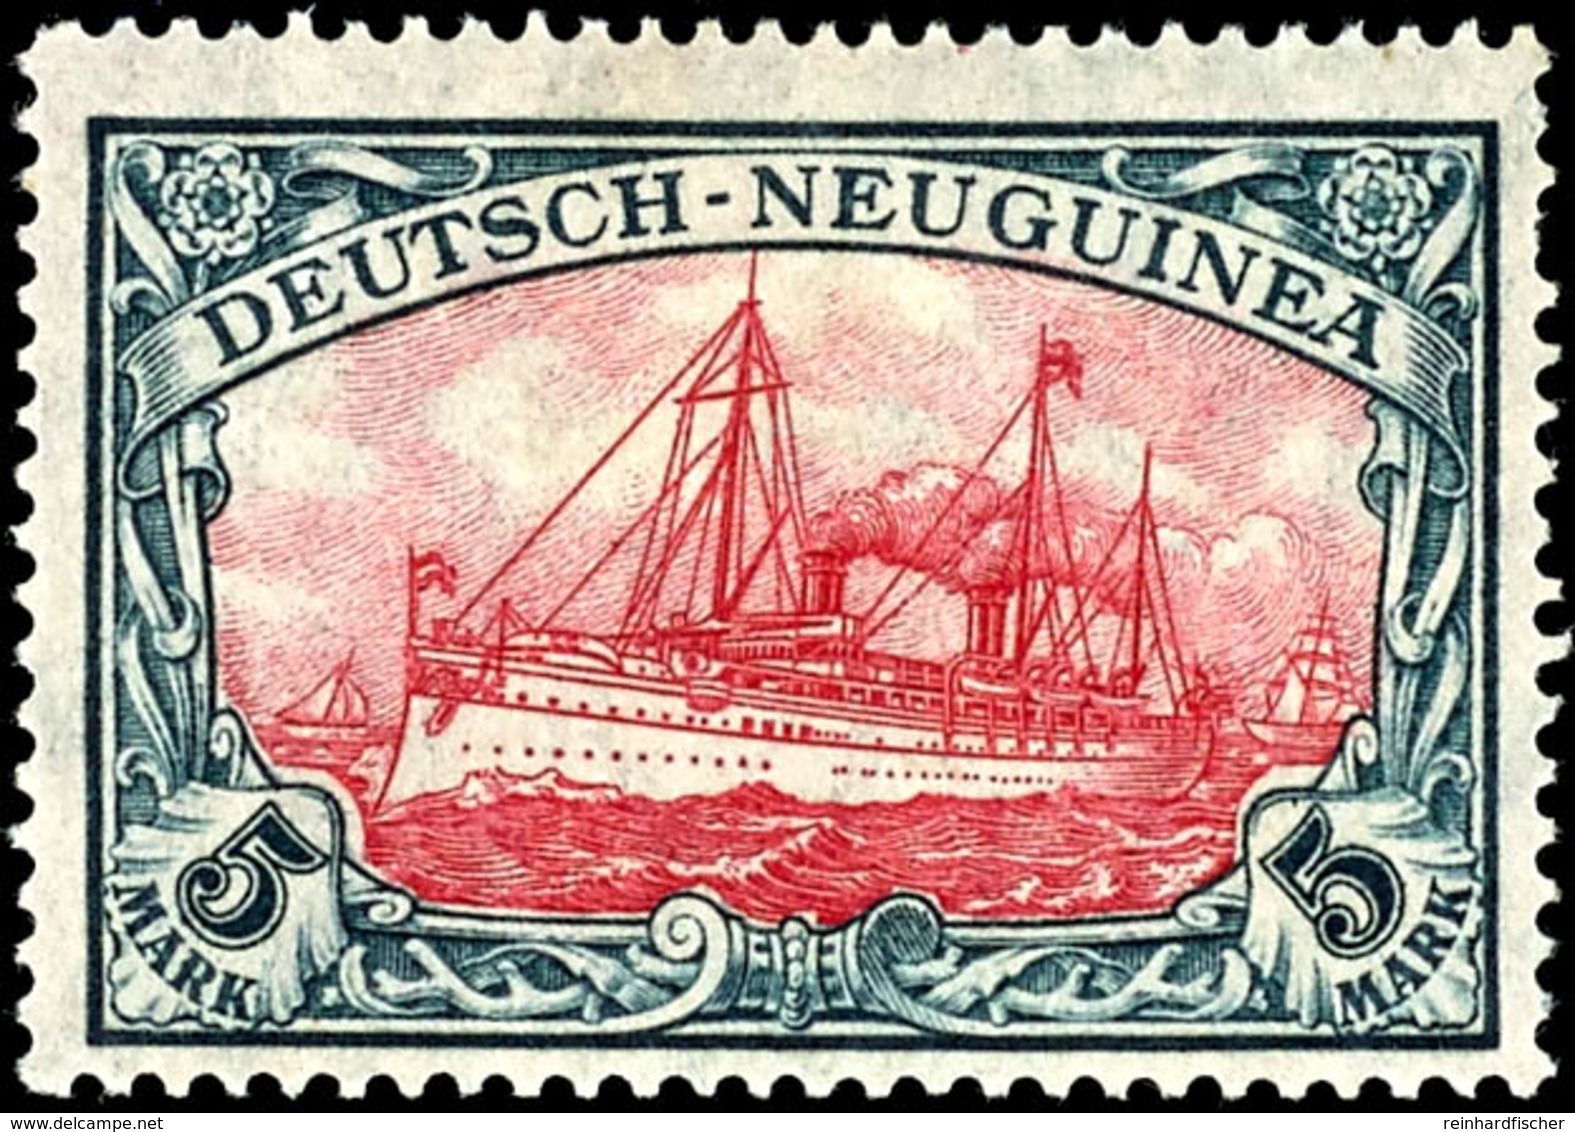 6429 5 RM Schiffszeichnung Mit Wasserzeichen, Kriegsdruck, Mittelstück Type III, Fotoattest Jäschke-Lantelme BPP: " Farb - Duits-Nieuw-Guinea